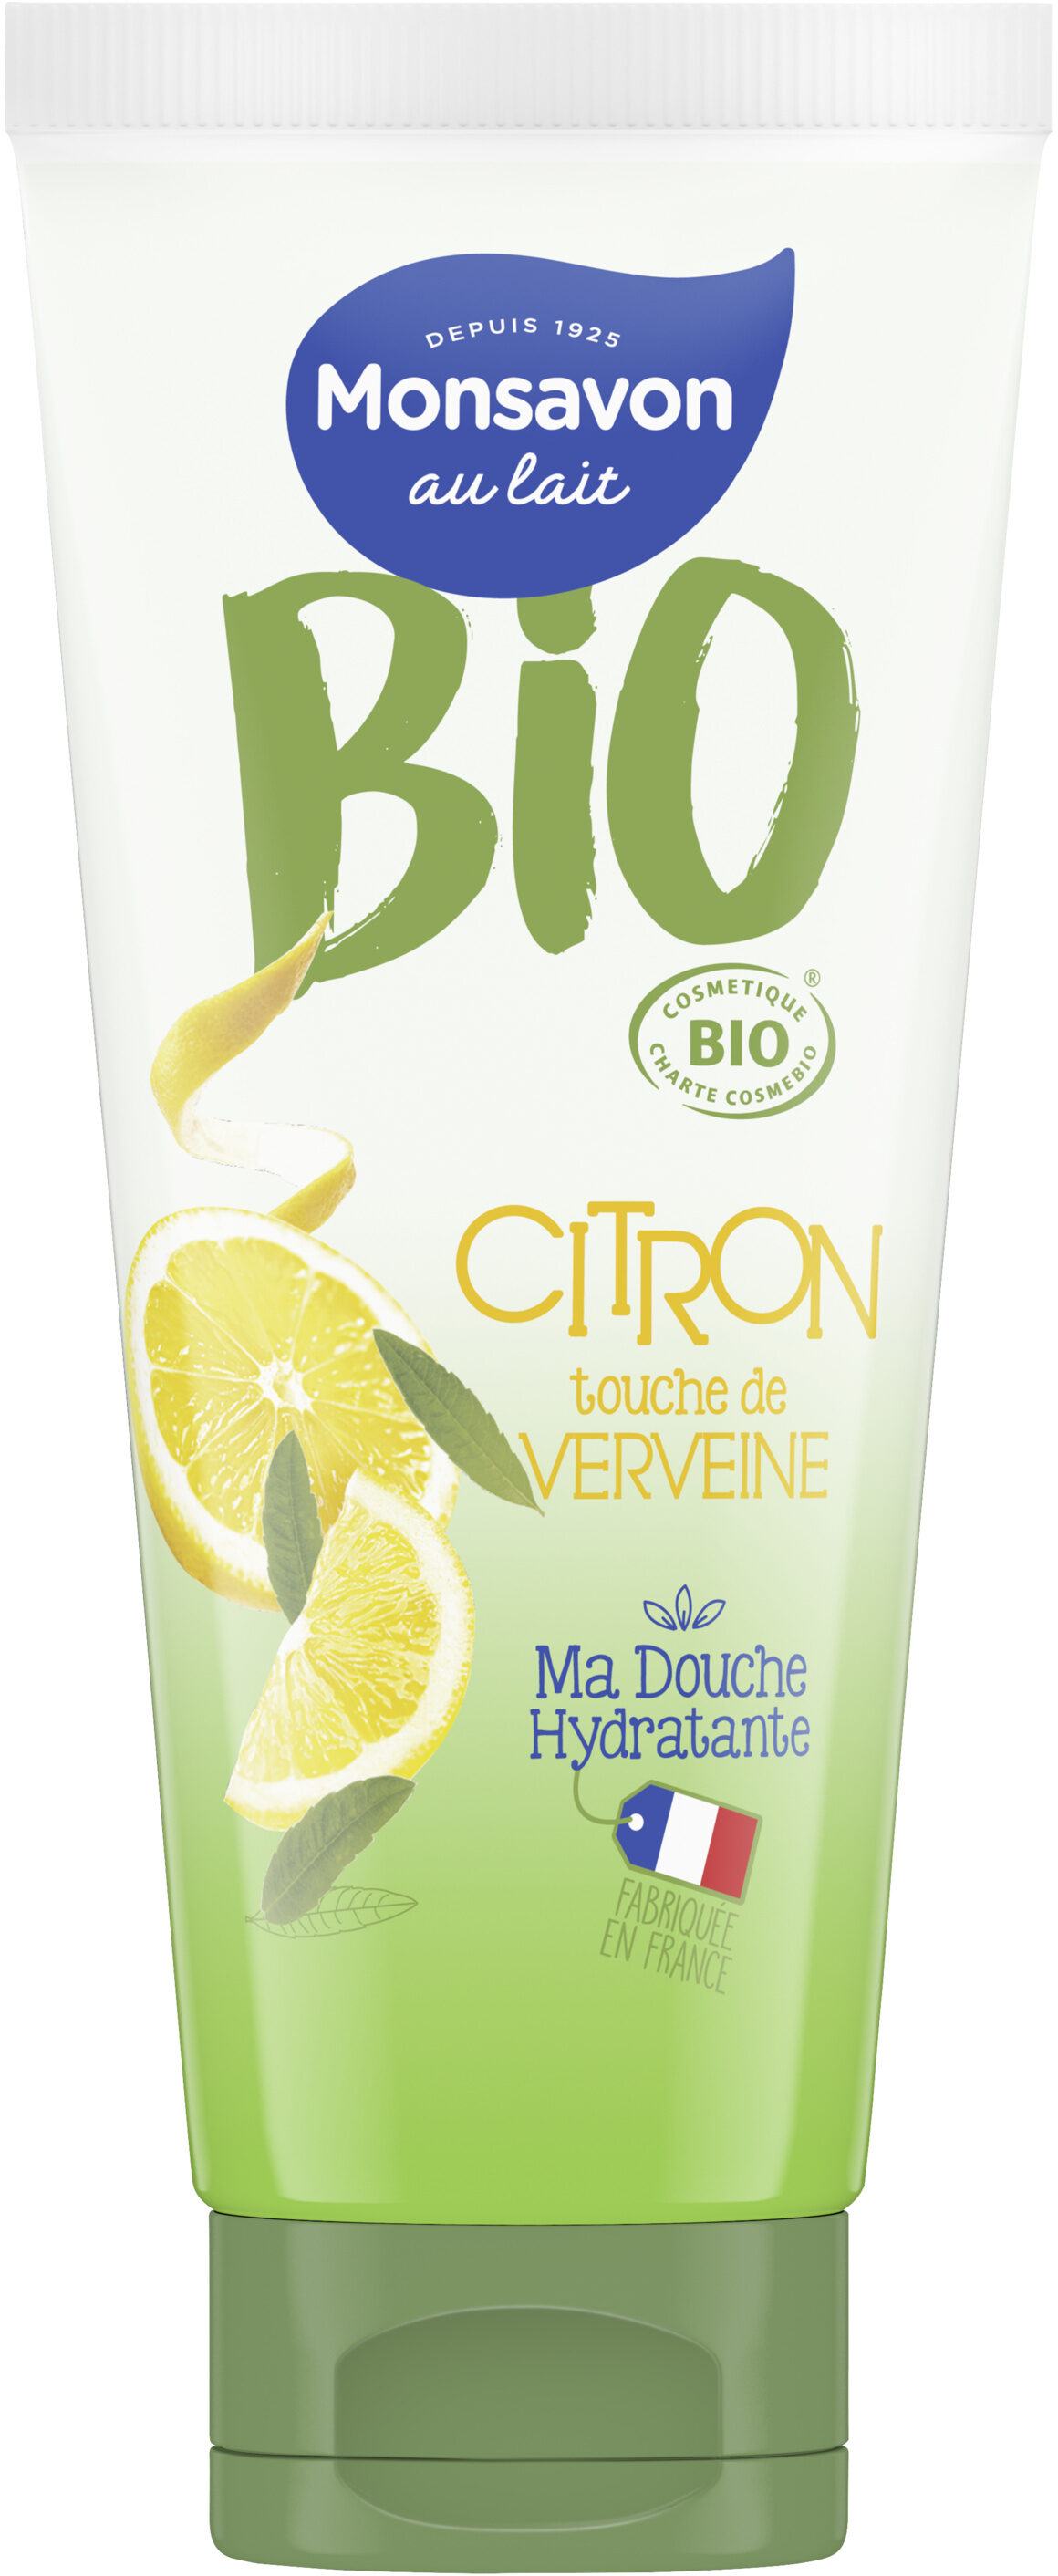 Monsavon Gel Douche Hydratant Certifié Bio Citron Touche de Verveine 200ml - Product - fr